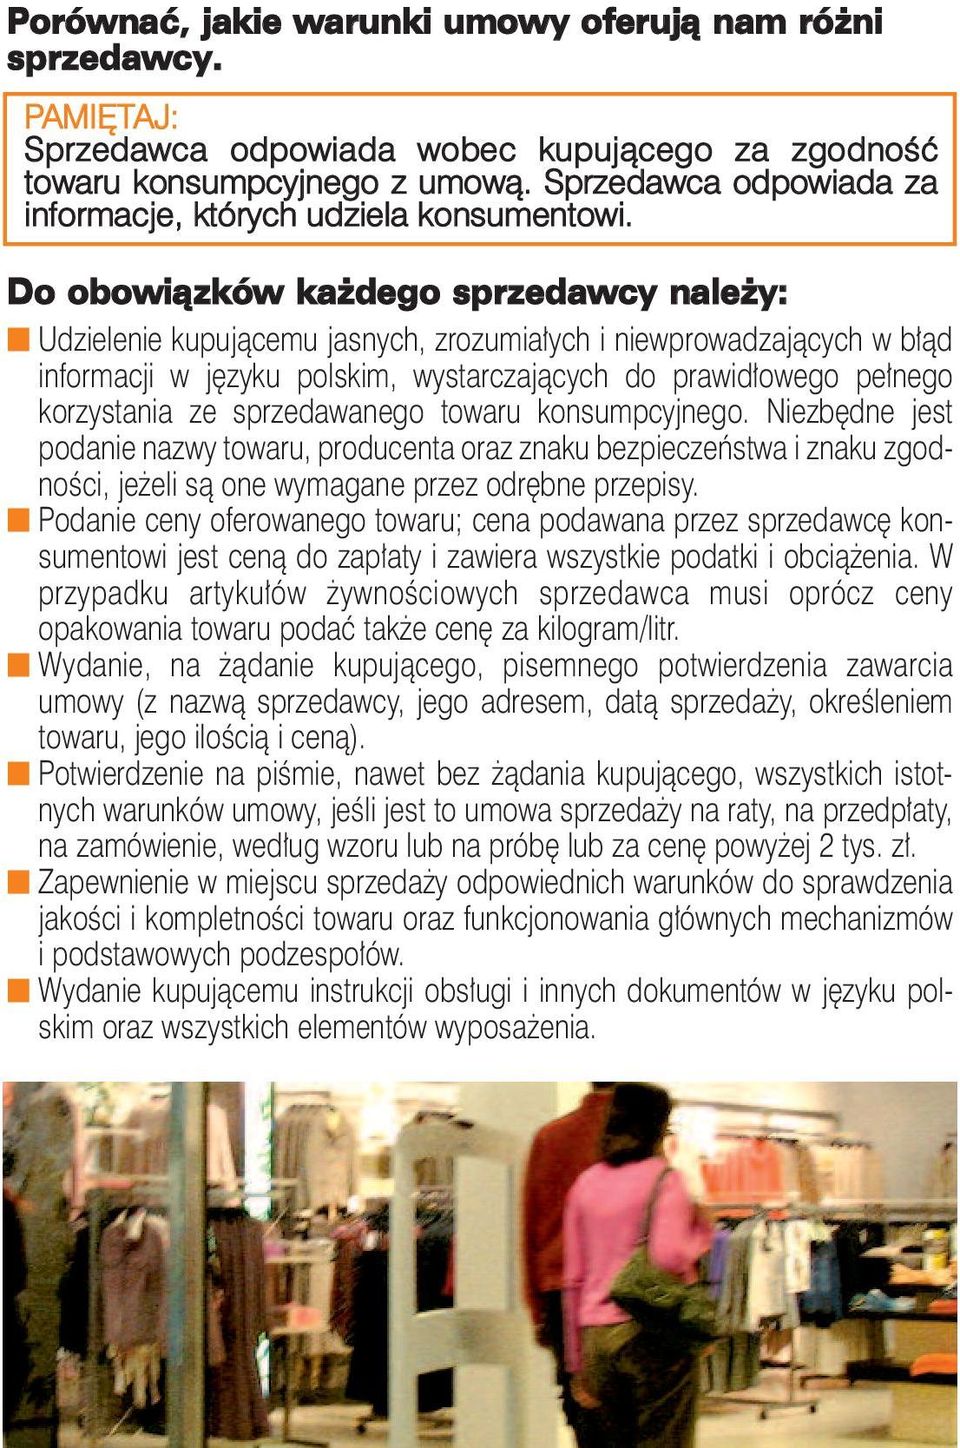 Do obowiązków każdego sprzedawcy należy: n Udzielenie kupującemu jasnych, zrozumiałych i niewprowadzających w błąd informacji w języku polskim, wystarczających do prawidłowego pełnego korzystania ze